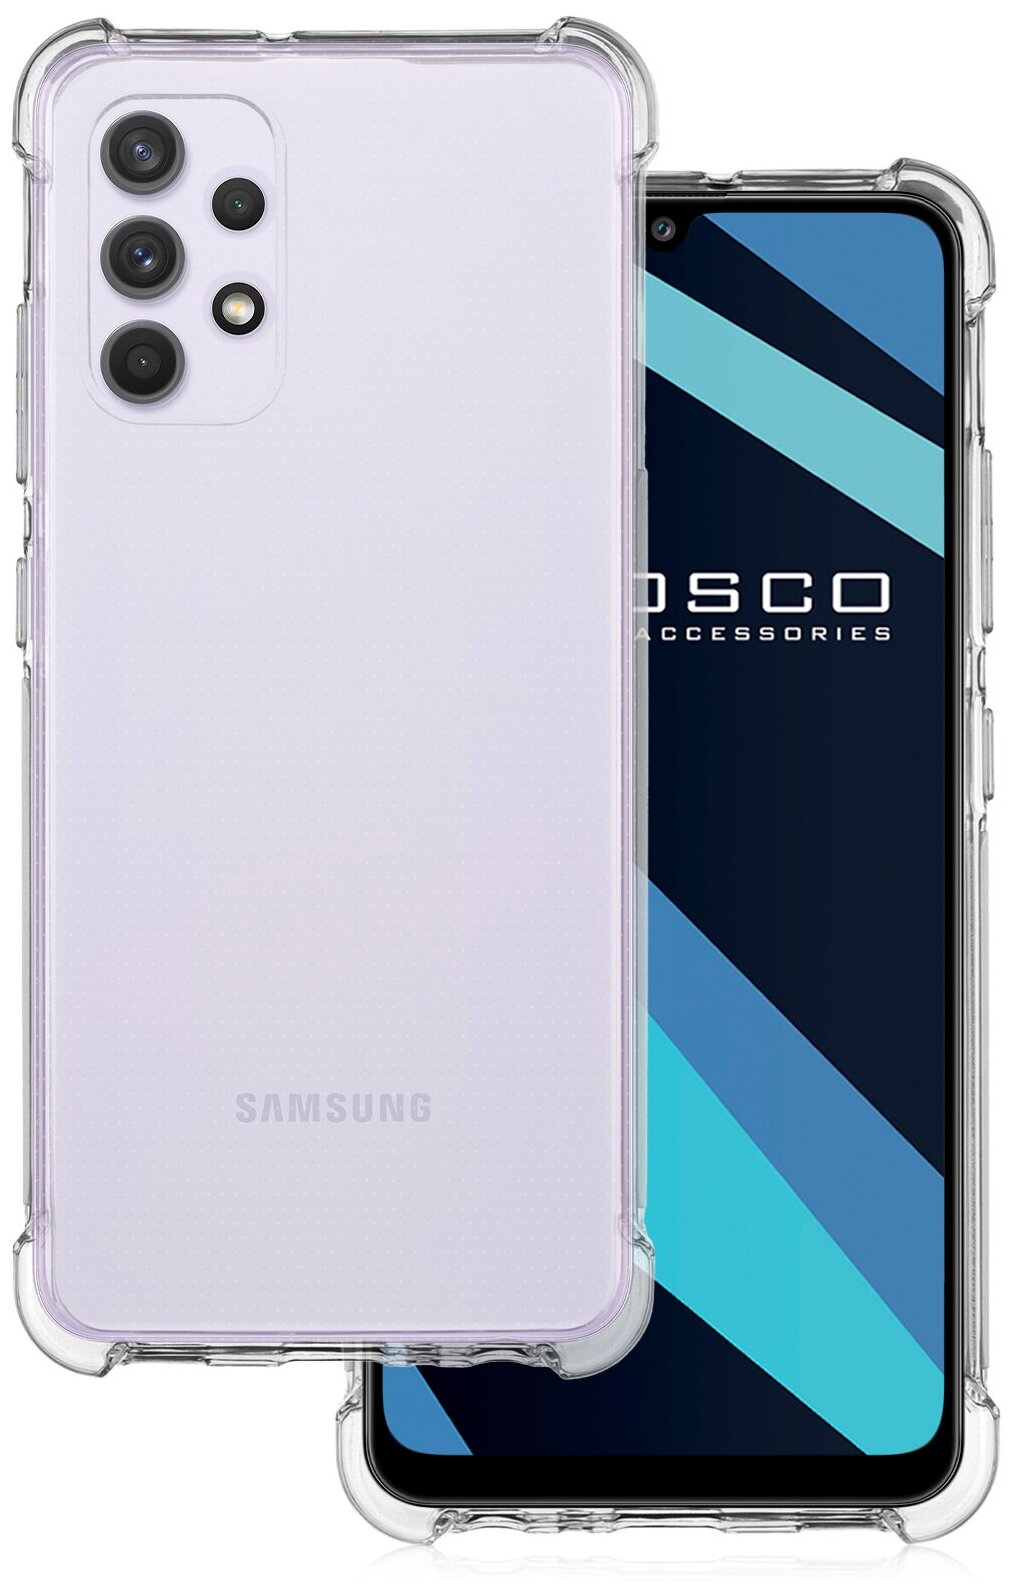 Противоударный силиконовый чехол ROSCO для Samsung Galaxy A32 (Самсунг Галакси А32) прозрачный сине-розовый